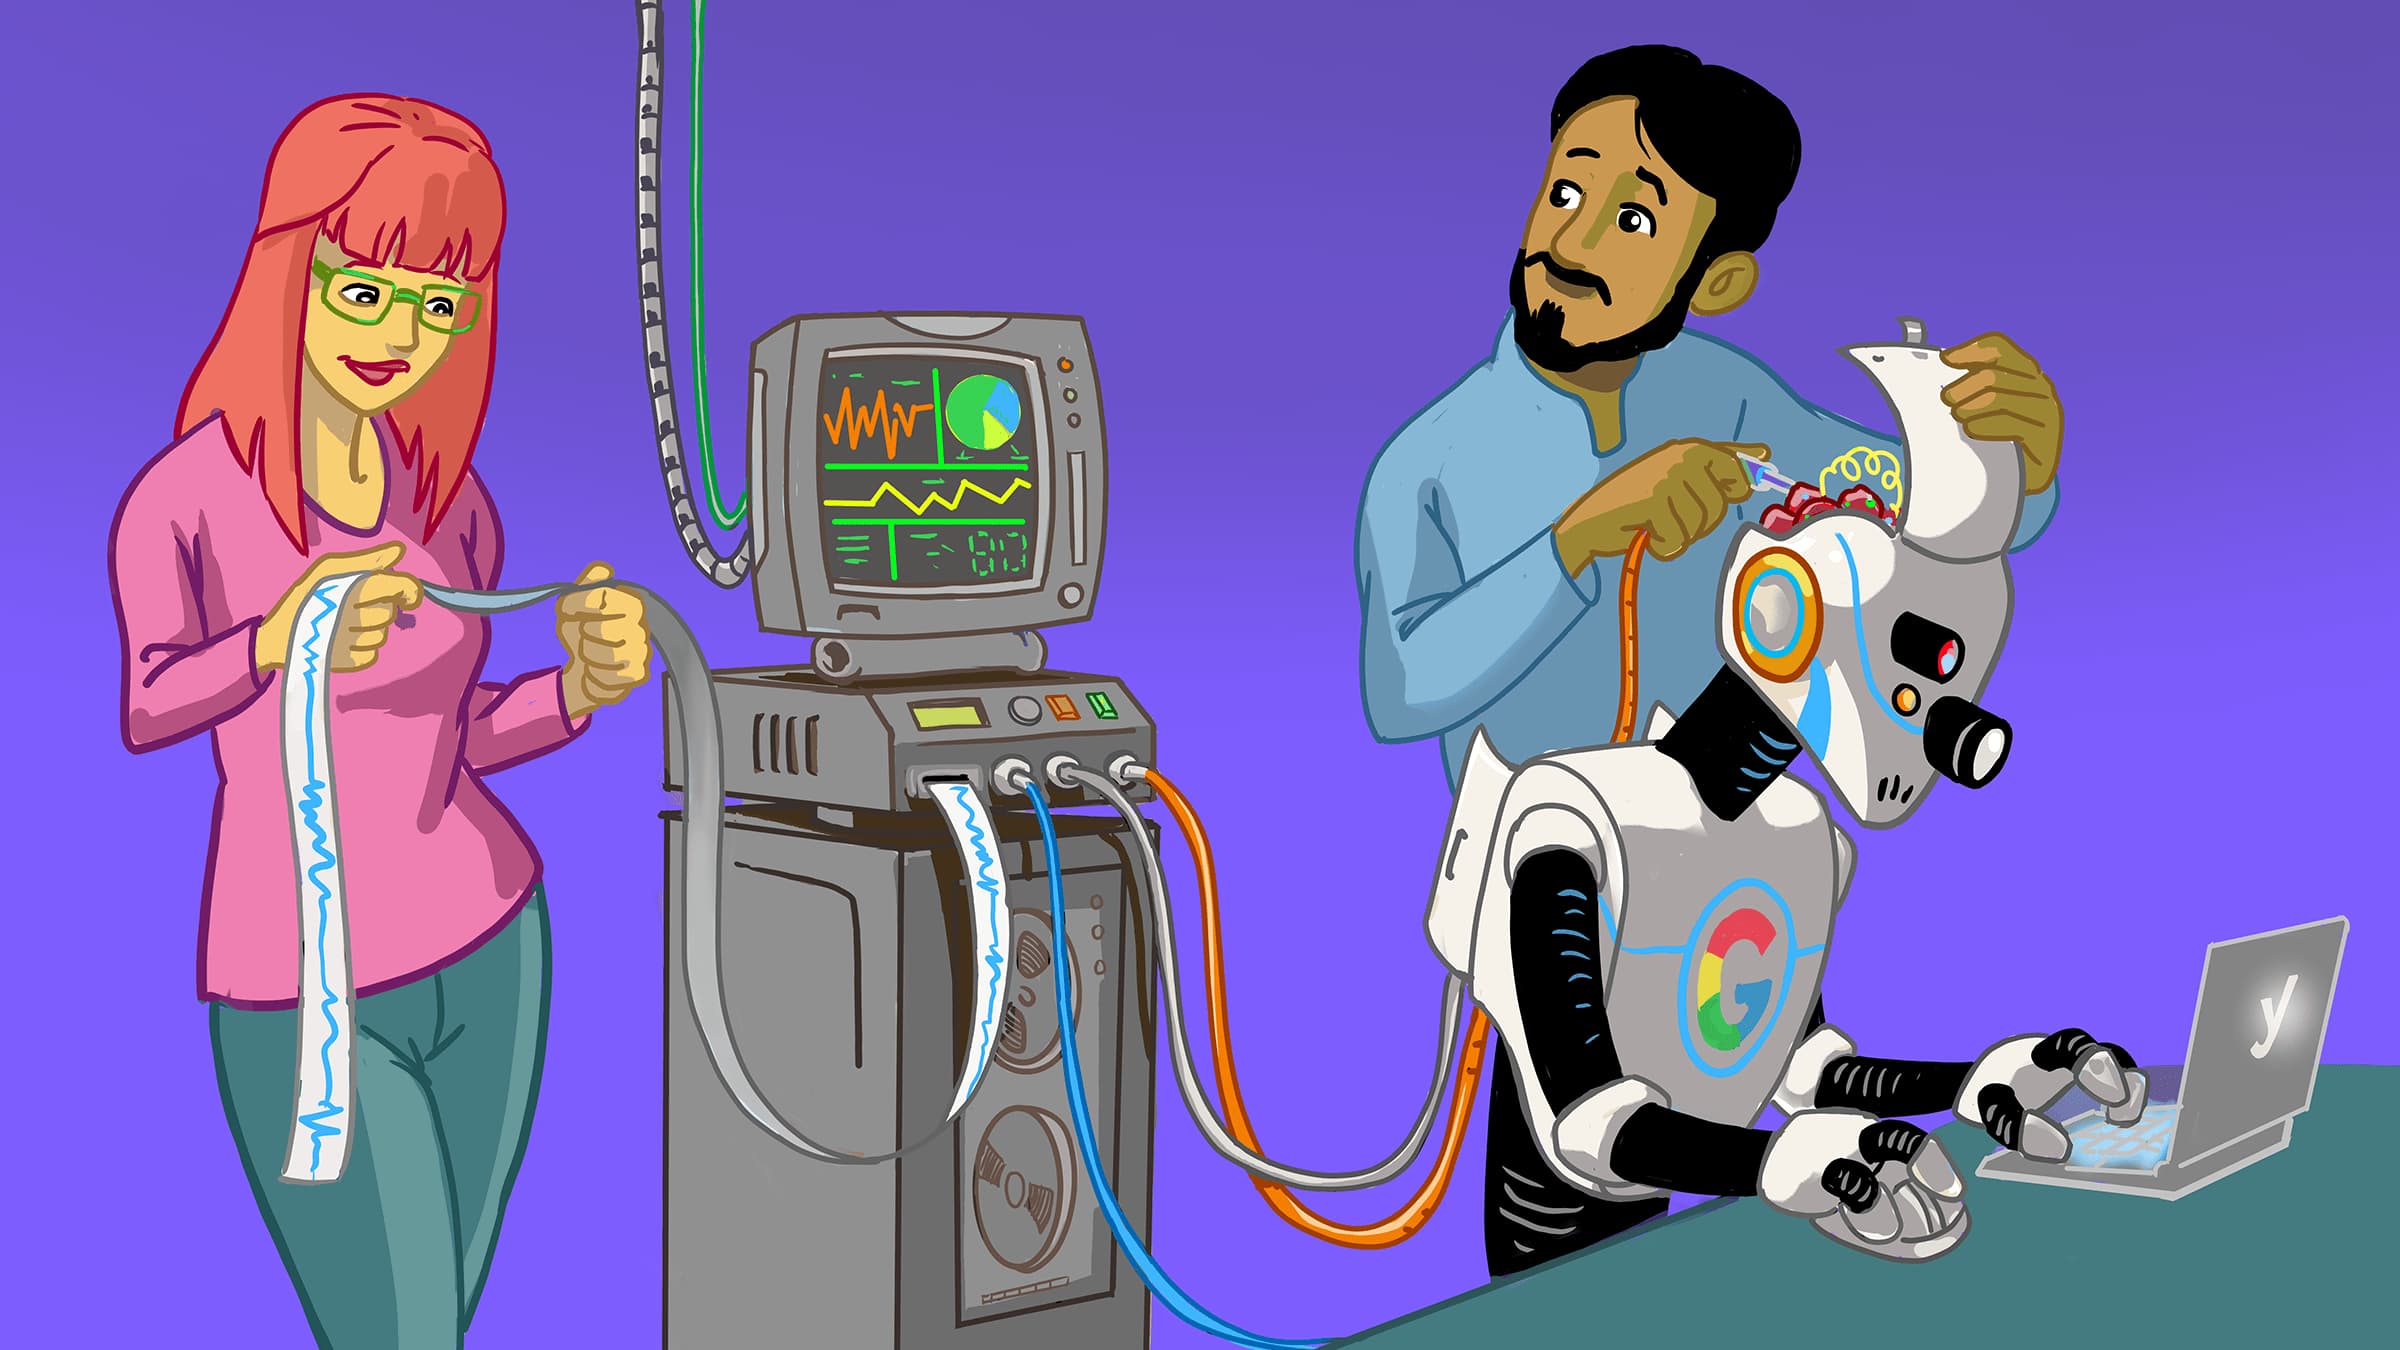 uma ilustração que mostra um robô do google sendo examinado por dois especialistas em dados 